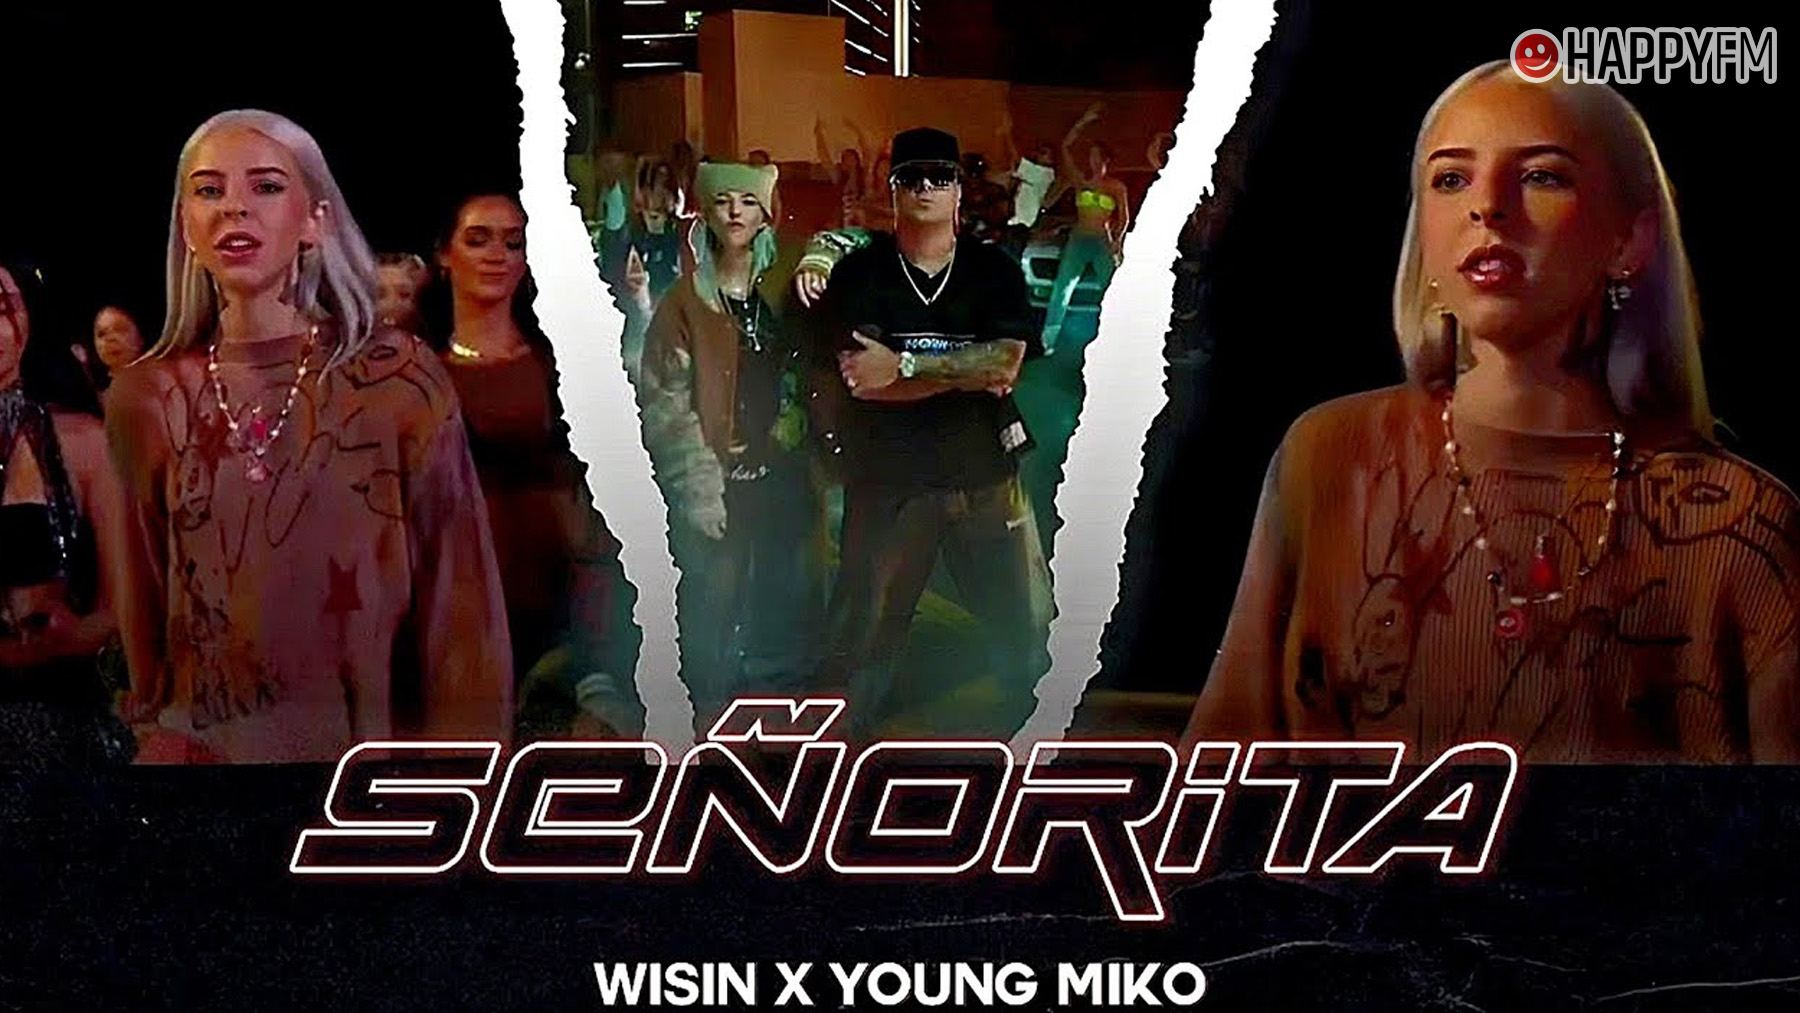 ‘Señorita’, de Wisin y Young Miko: letra y vídeo